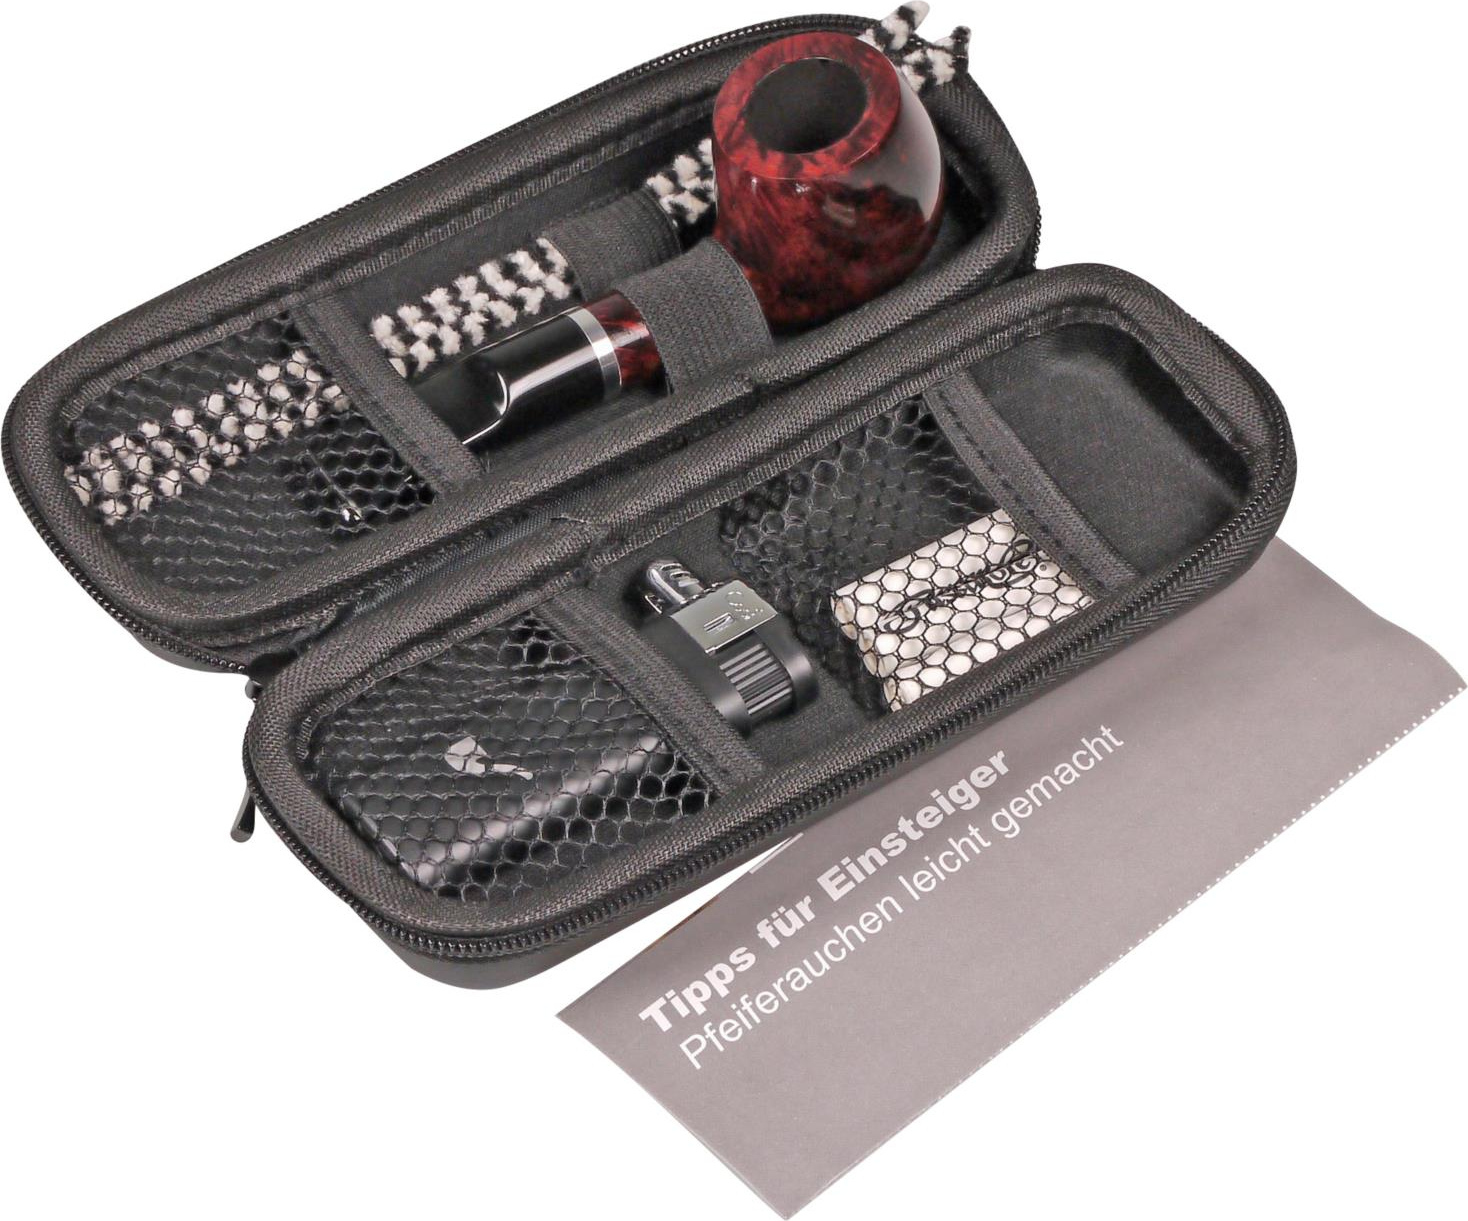 Pfeifen Einsteiger Set Passatore Pico Pfeife Hartbox Feuerzeug Filter Reiniger 